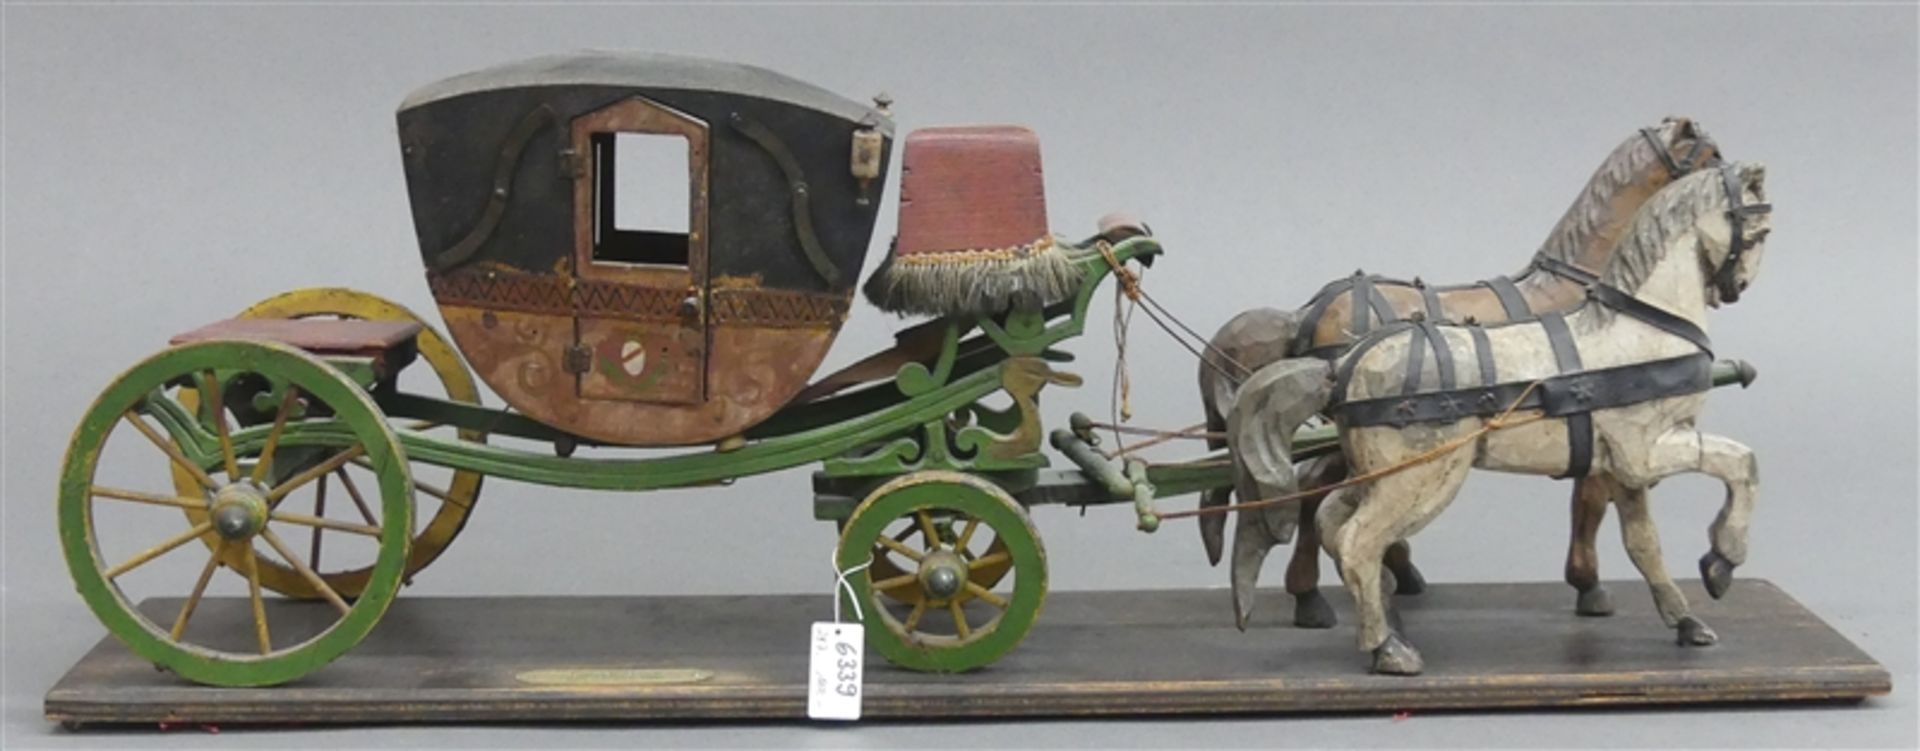 KutschenmodellEnglish Mail Coach, Modell nach einer Kutsche von 1660, zweispännig, auf Holzplatte,